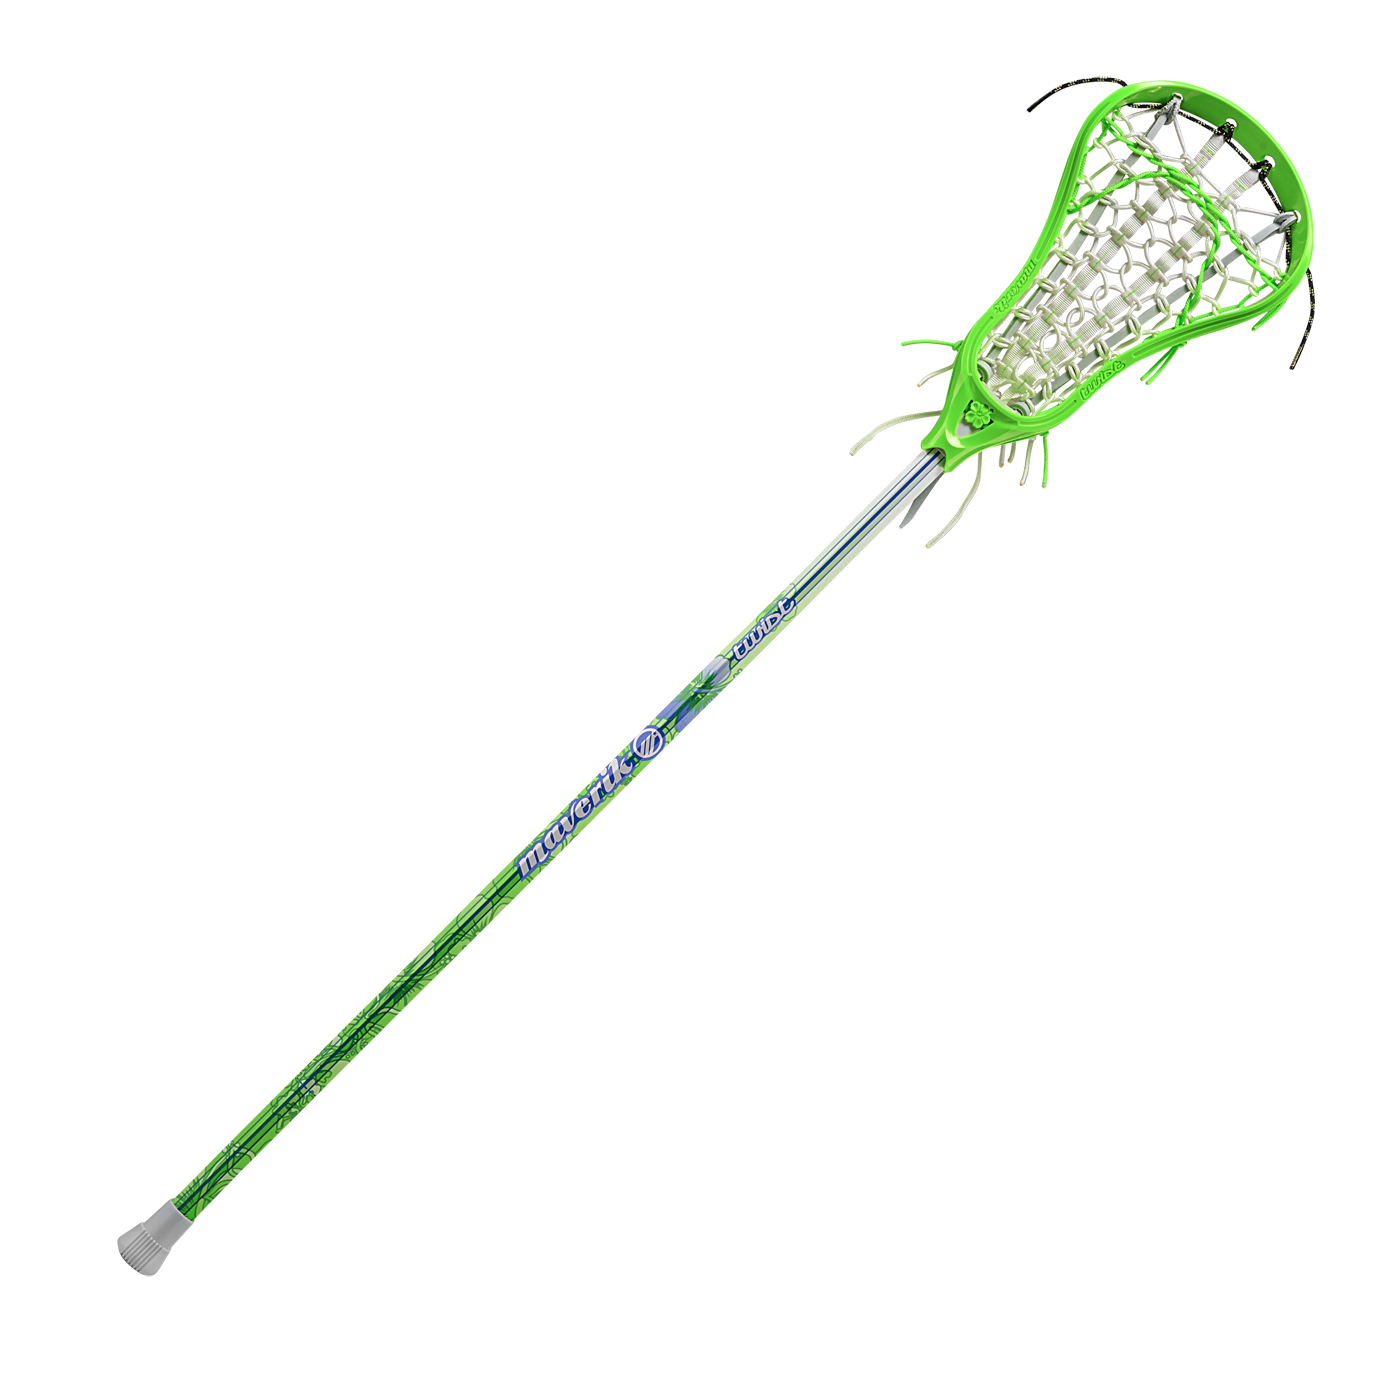 lacrosse clipart lax stick clipart, transparent - 254.09Kb 1400x1400.